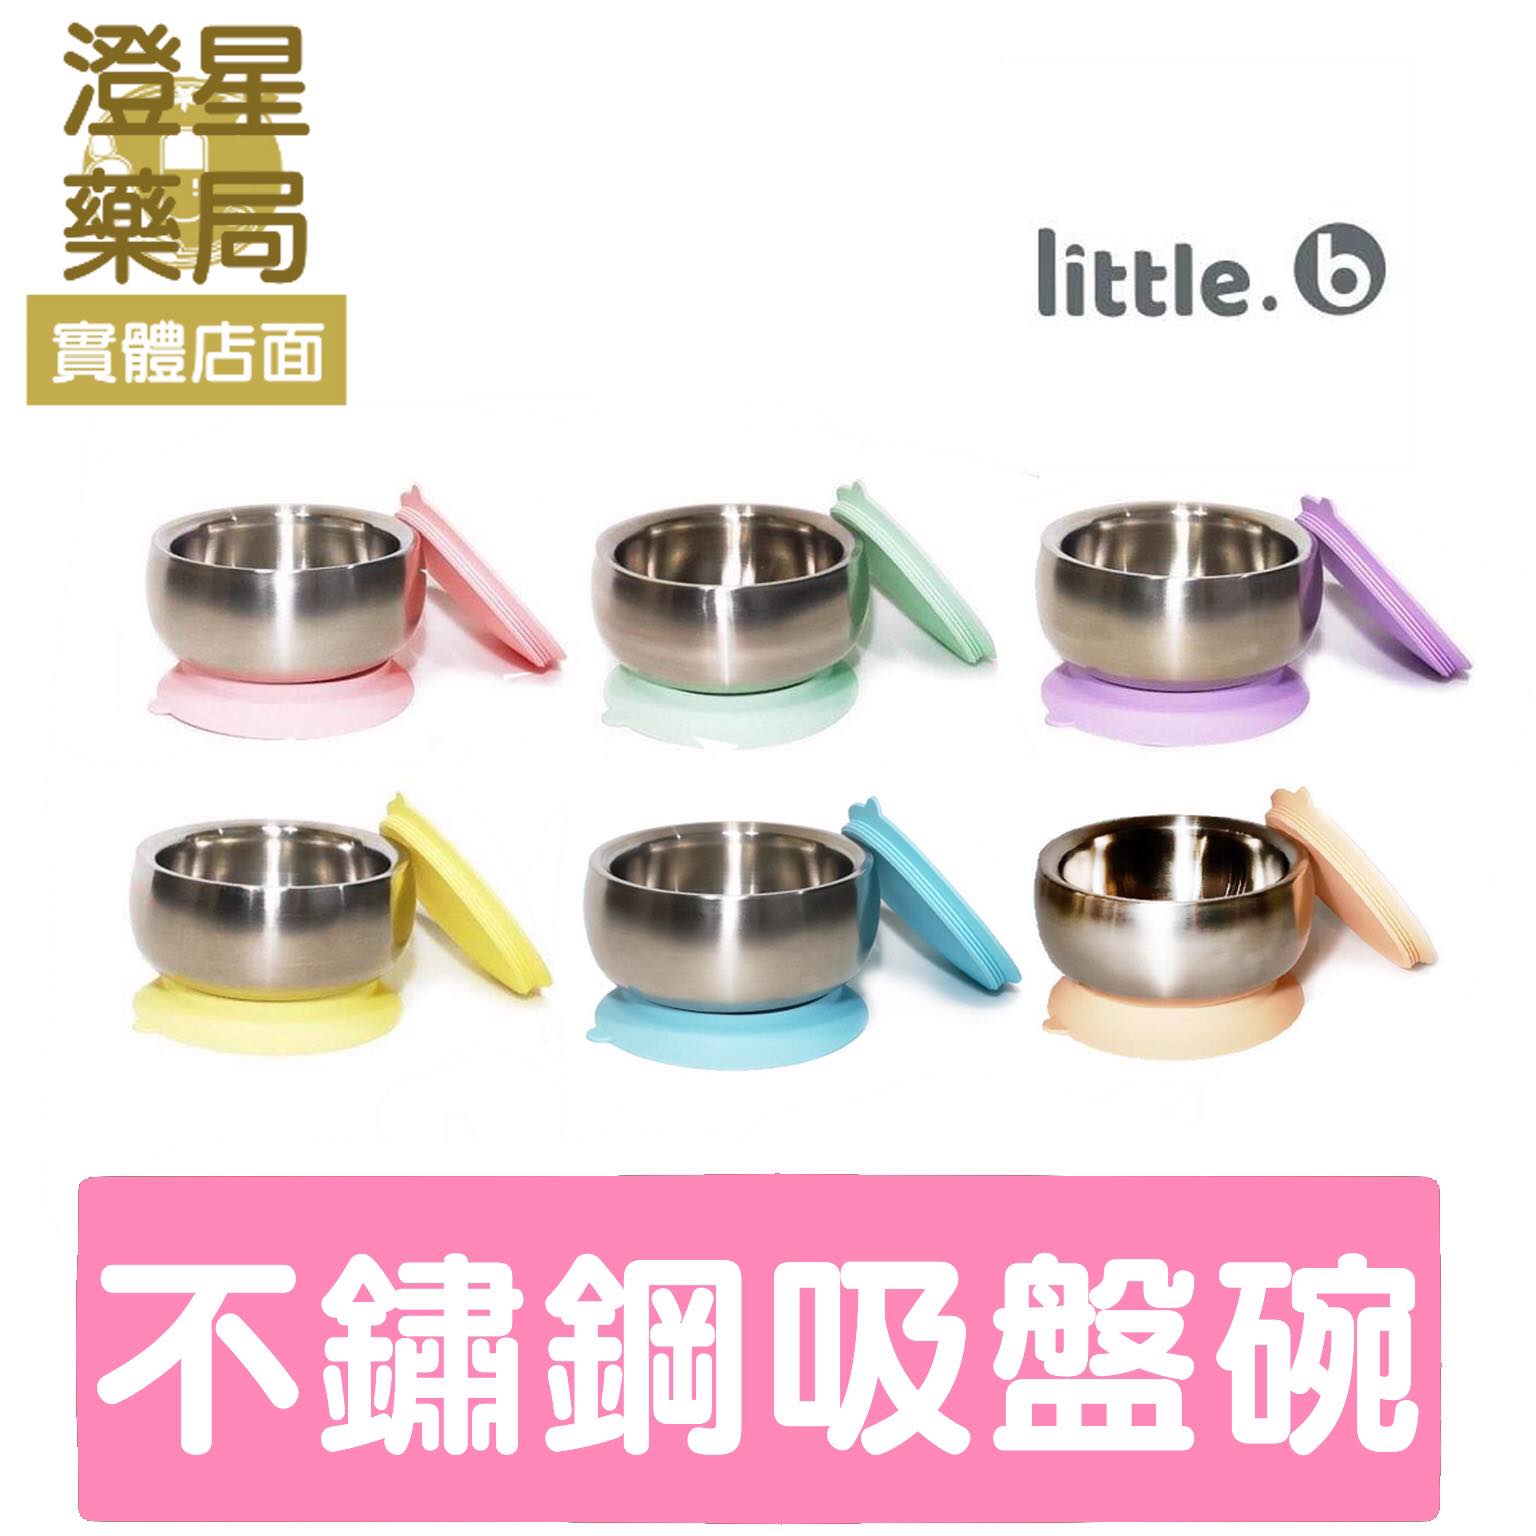 【贈ibobomi米圈圈】 美國 little.b 316不鏽鋼餐具系列 / 雙層不鏽鋼吸盤碗 / 學習碗 吸盤碗 寶寶餐具